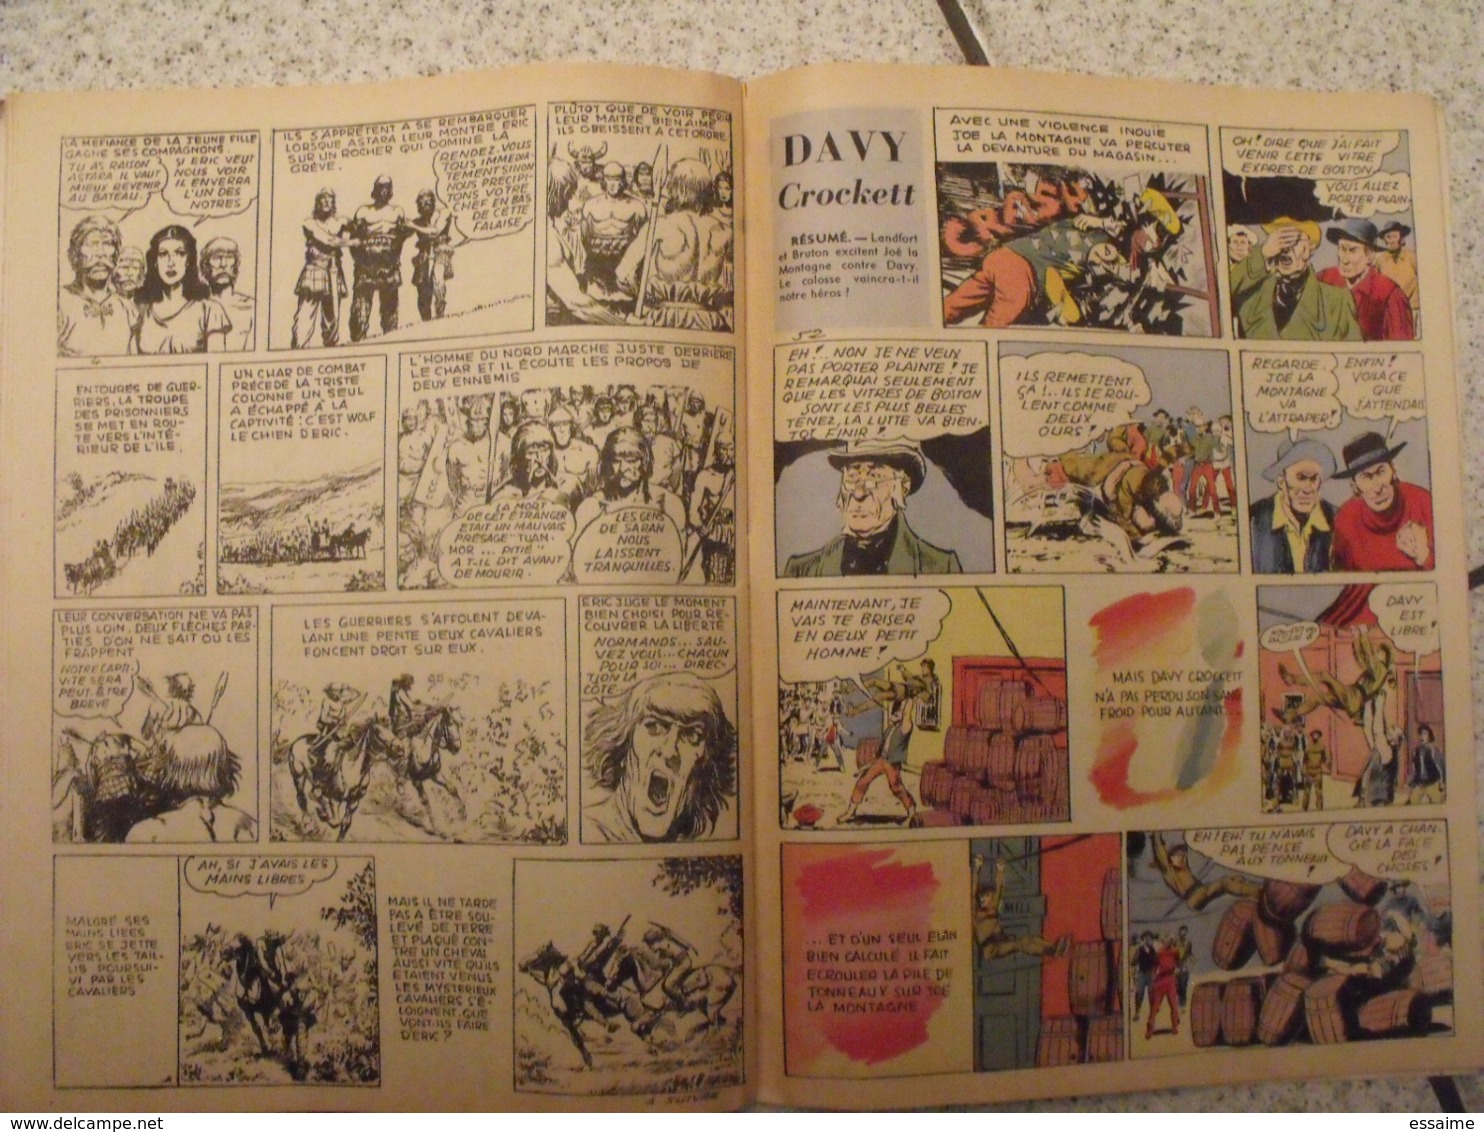 Pierrot. 2 n° de 1956. n° 1 et 3. Pellos Petipon jac remise marin flèche d'or. BD à redécouvrir